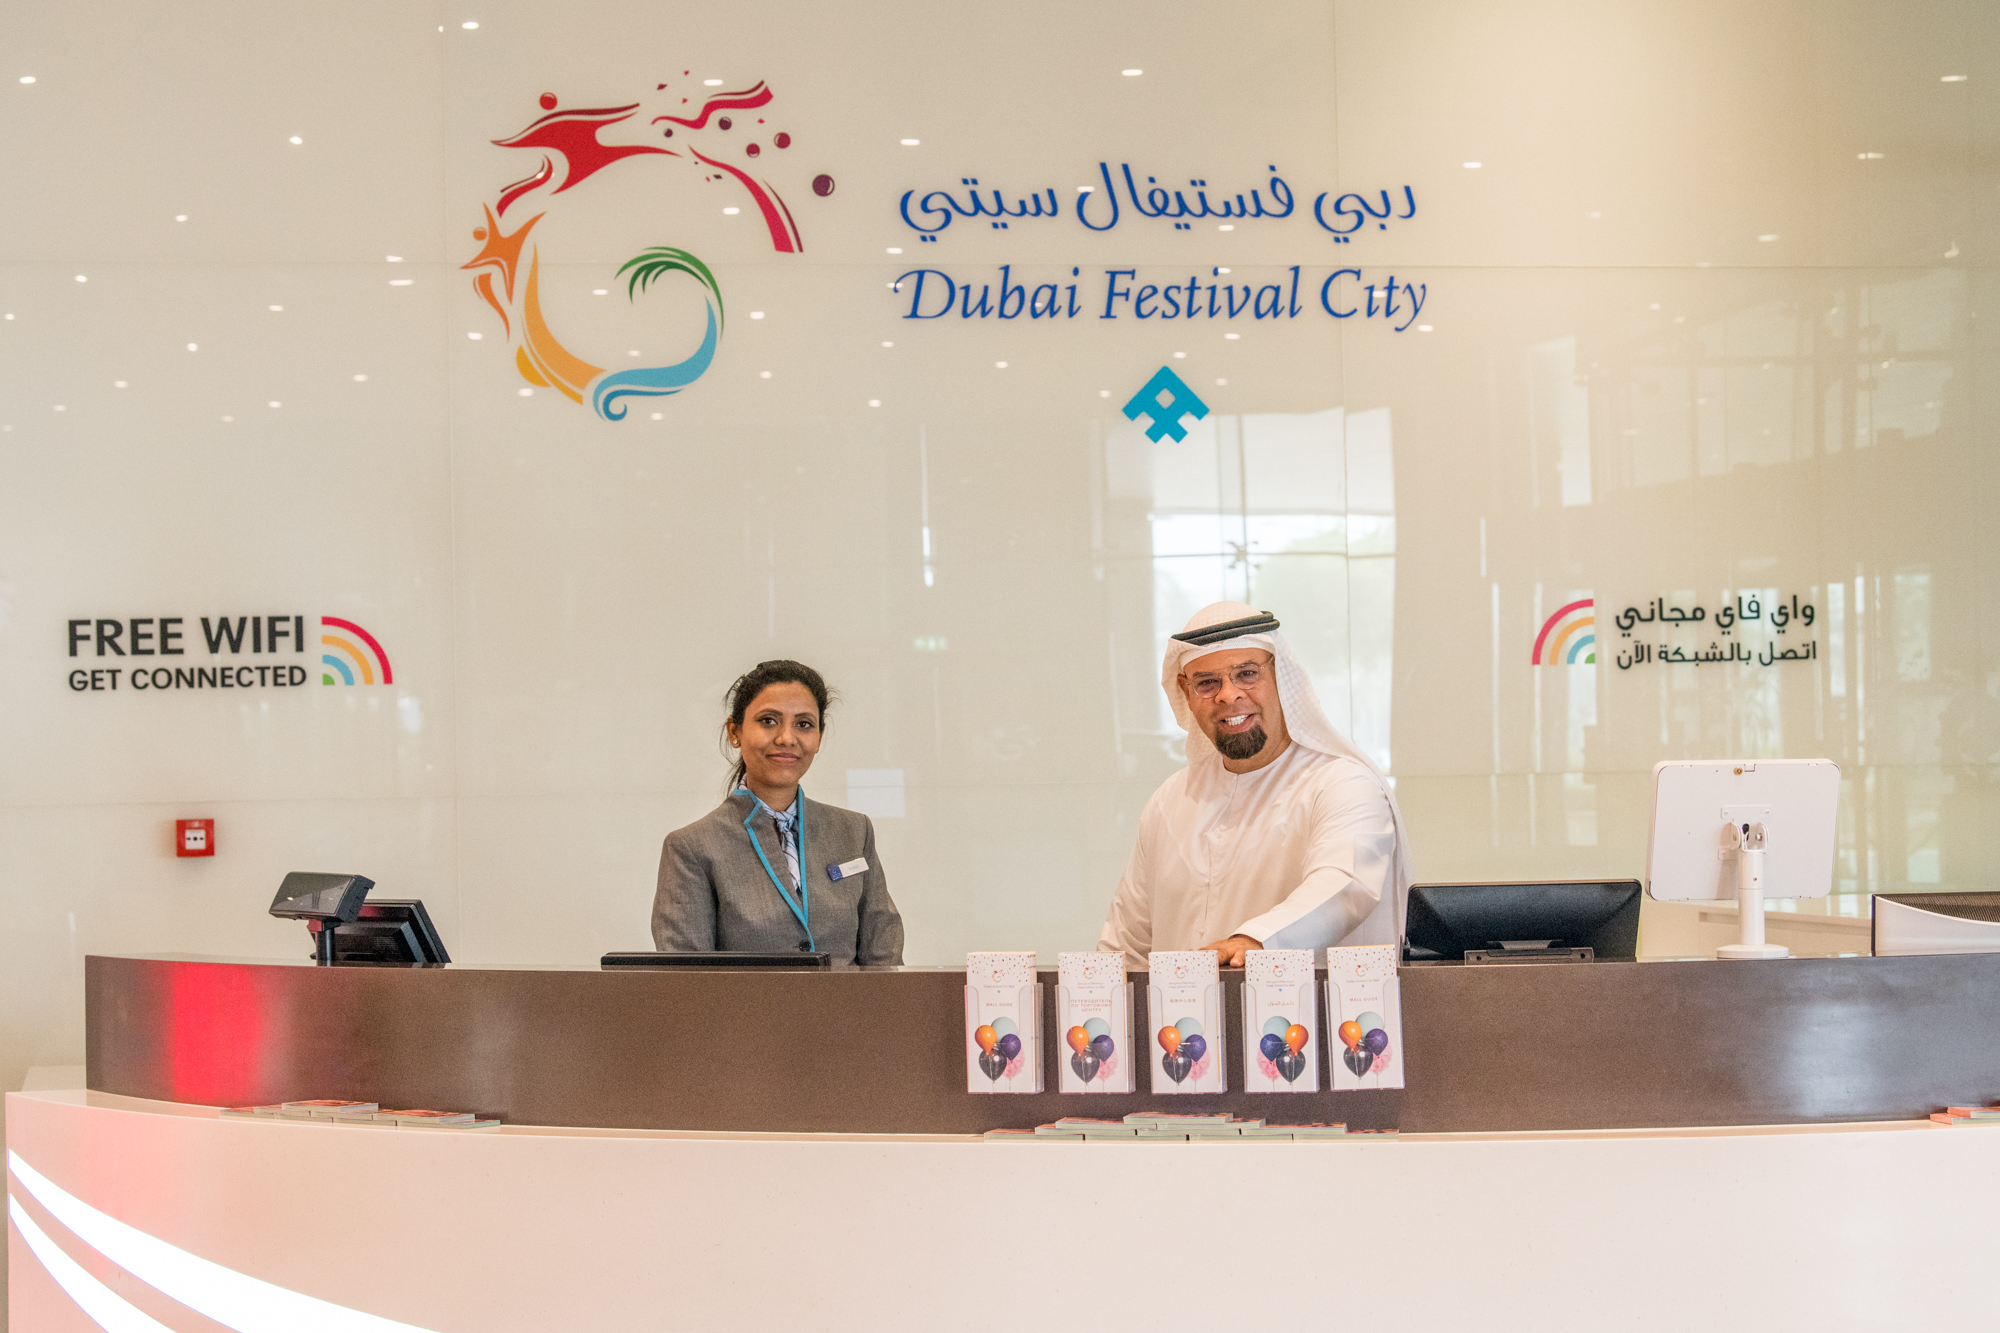 مبادرة دبي فستيفال سيتي مول الخيرية خلال عيد الحب 2019